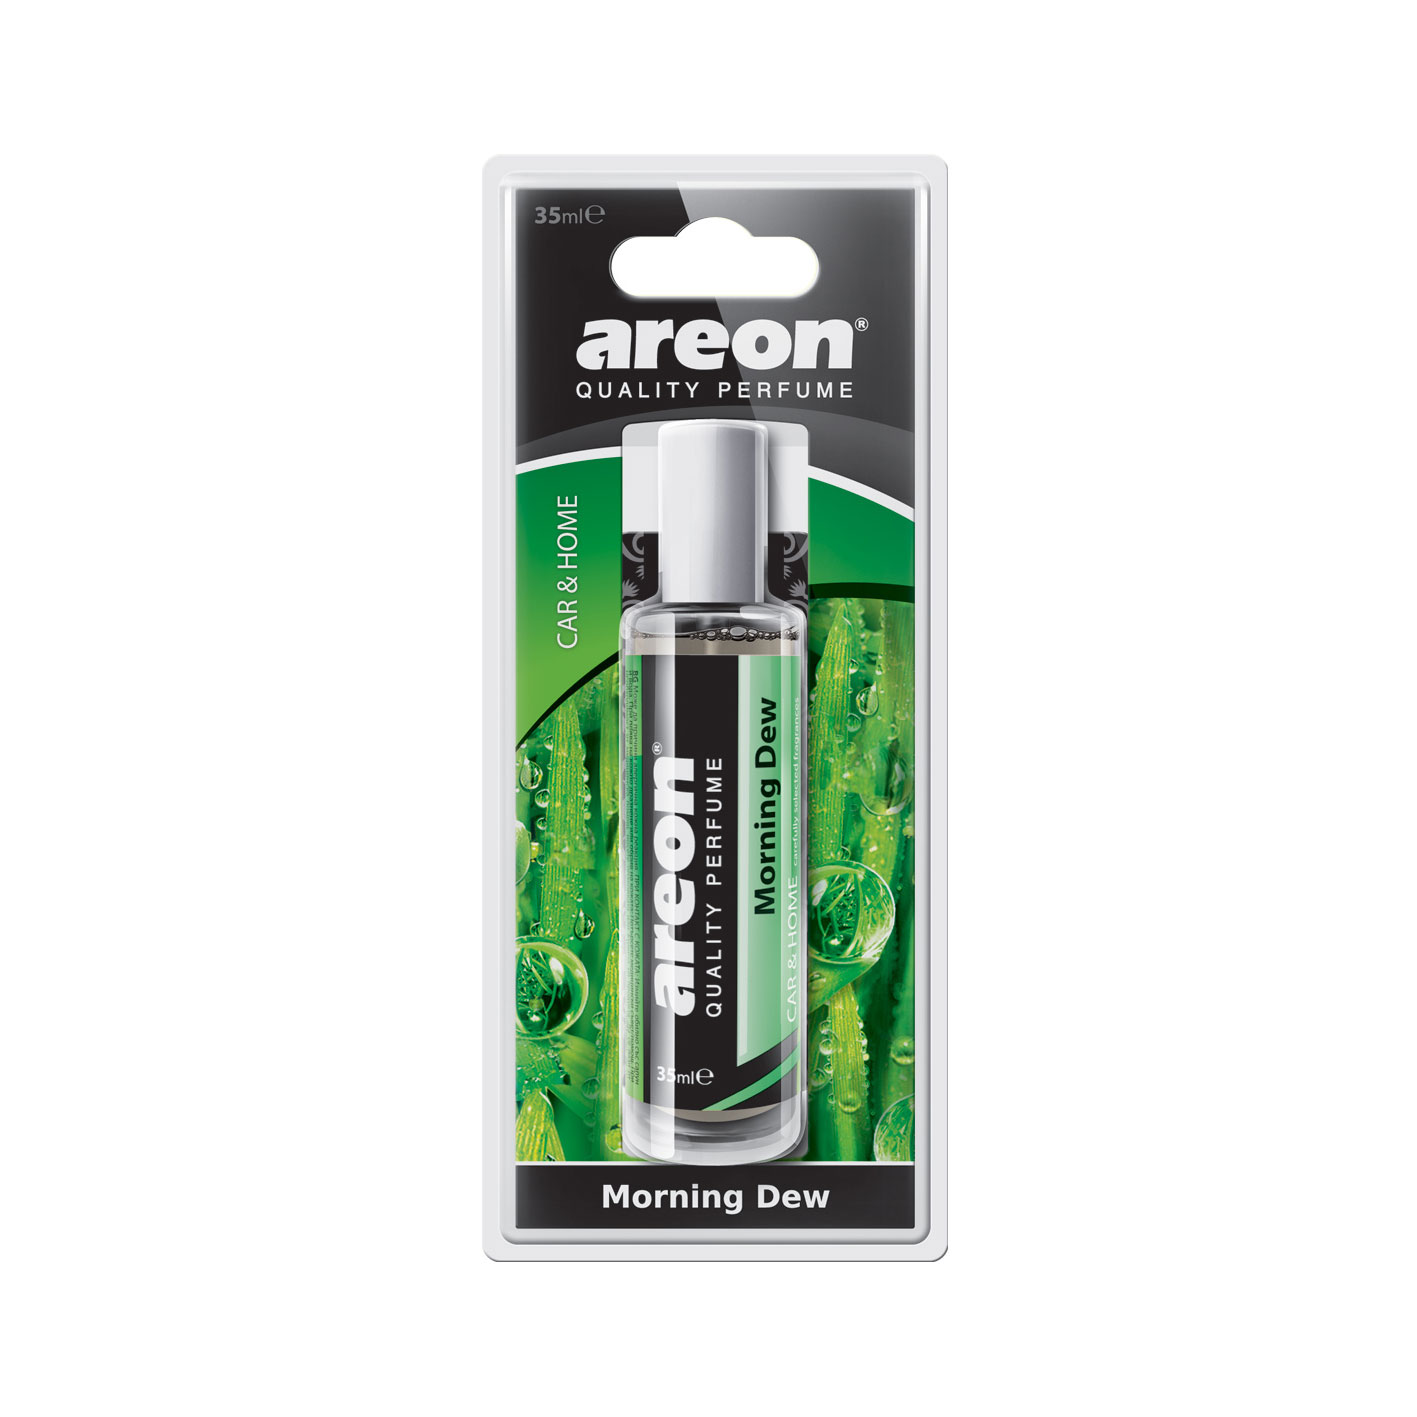 Areon Perfume 35ml Morning Dew